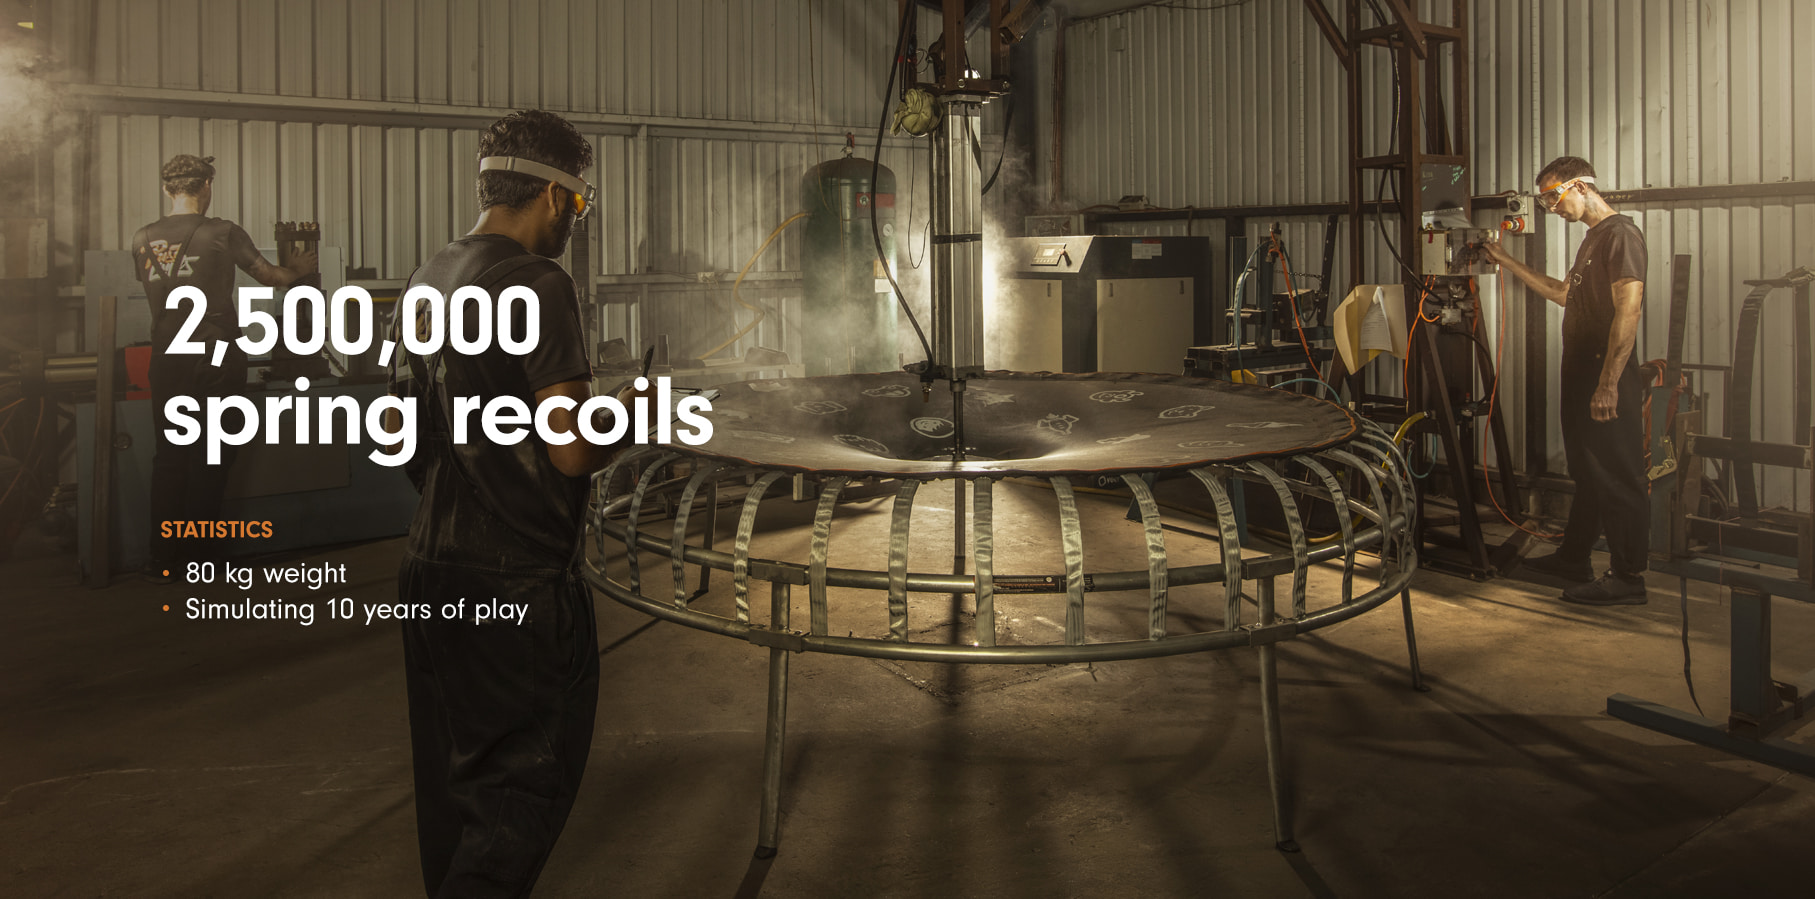 2,500,000 spring recoils